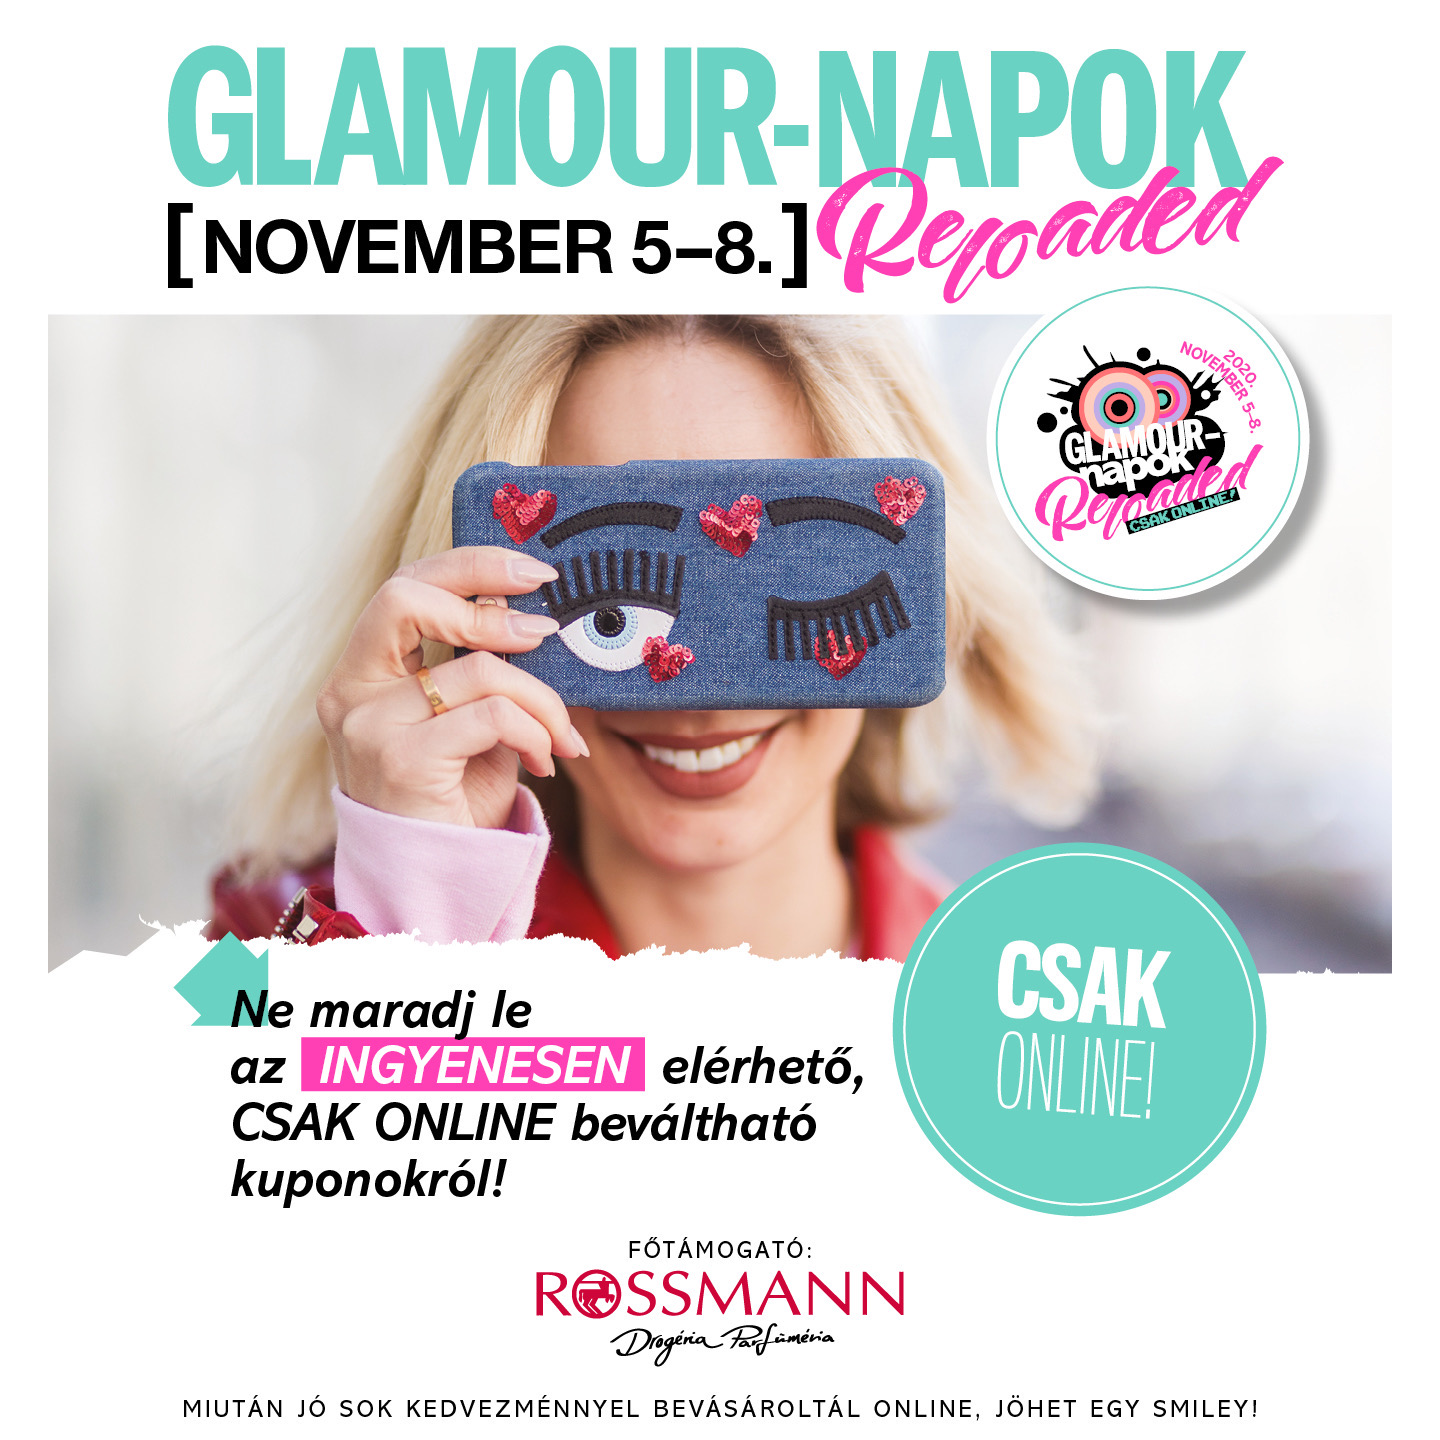 Ingyenes elérhető kuponokkal vár a GLAMOUR-napok Reloaded november 5-8.  között - Glamour